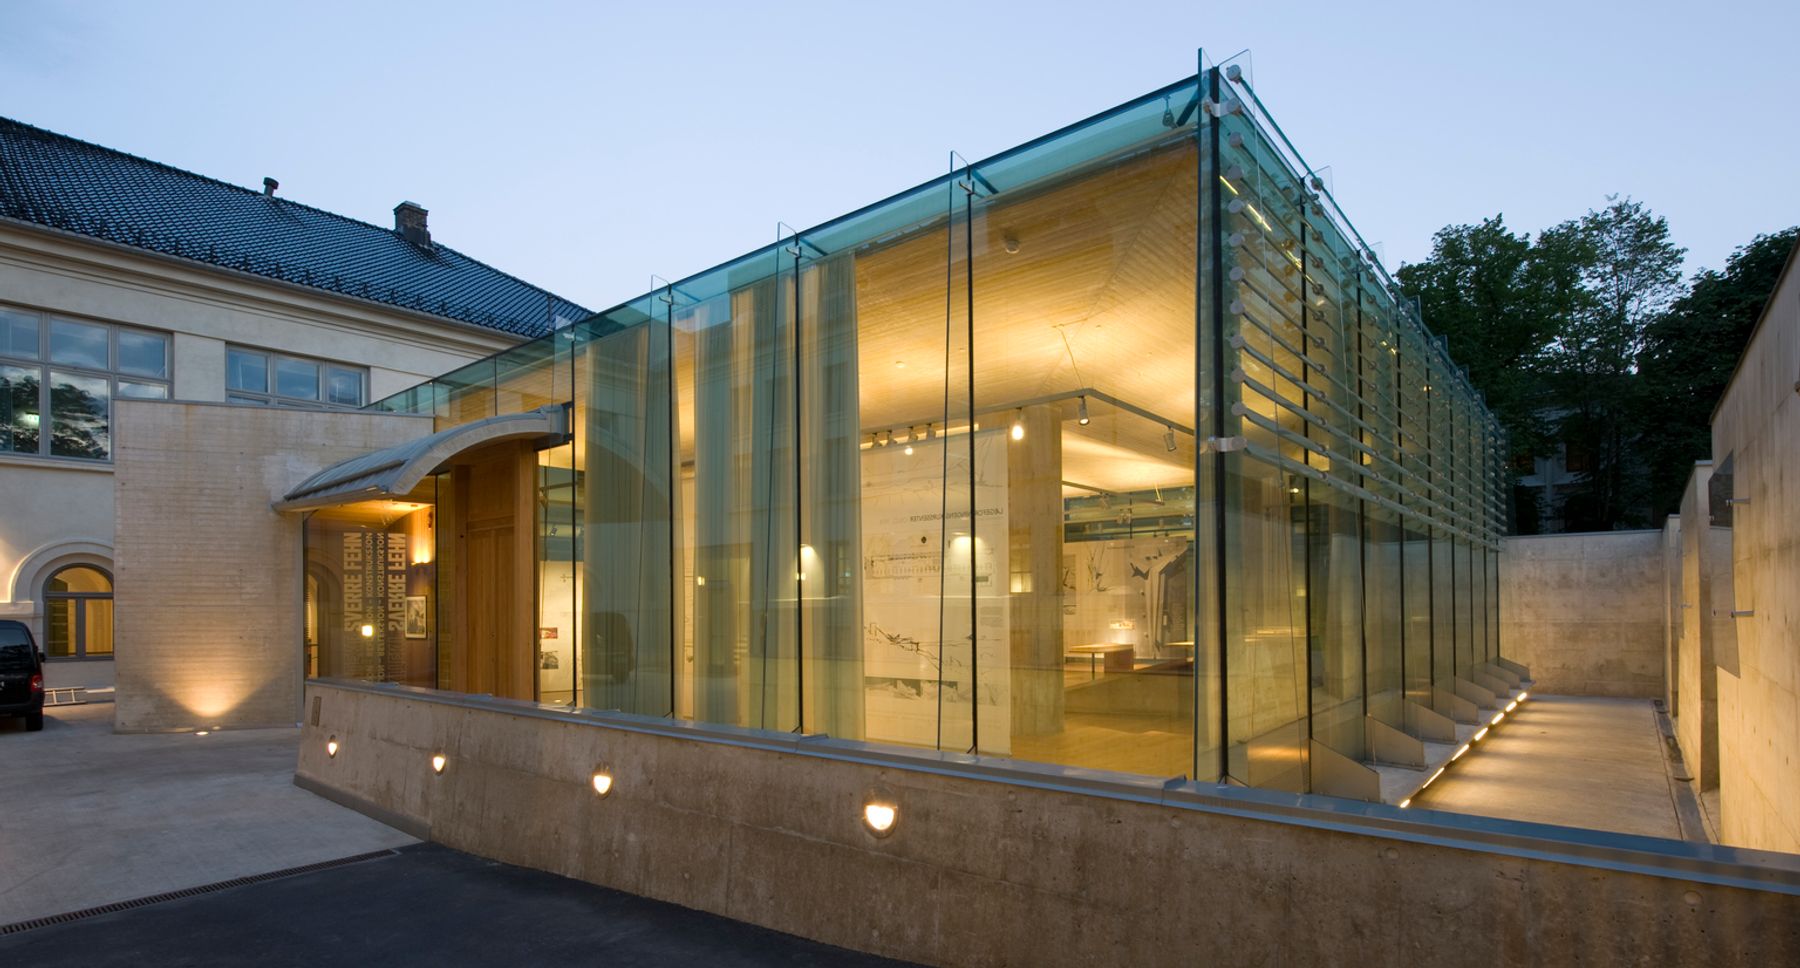 Nasjonalmuseet for kunst, arkitektur og design (Museo dell’Architettura), Oslo. Architettura: Prof. Arch. Sverre Fehn, Oslo.